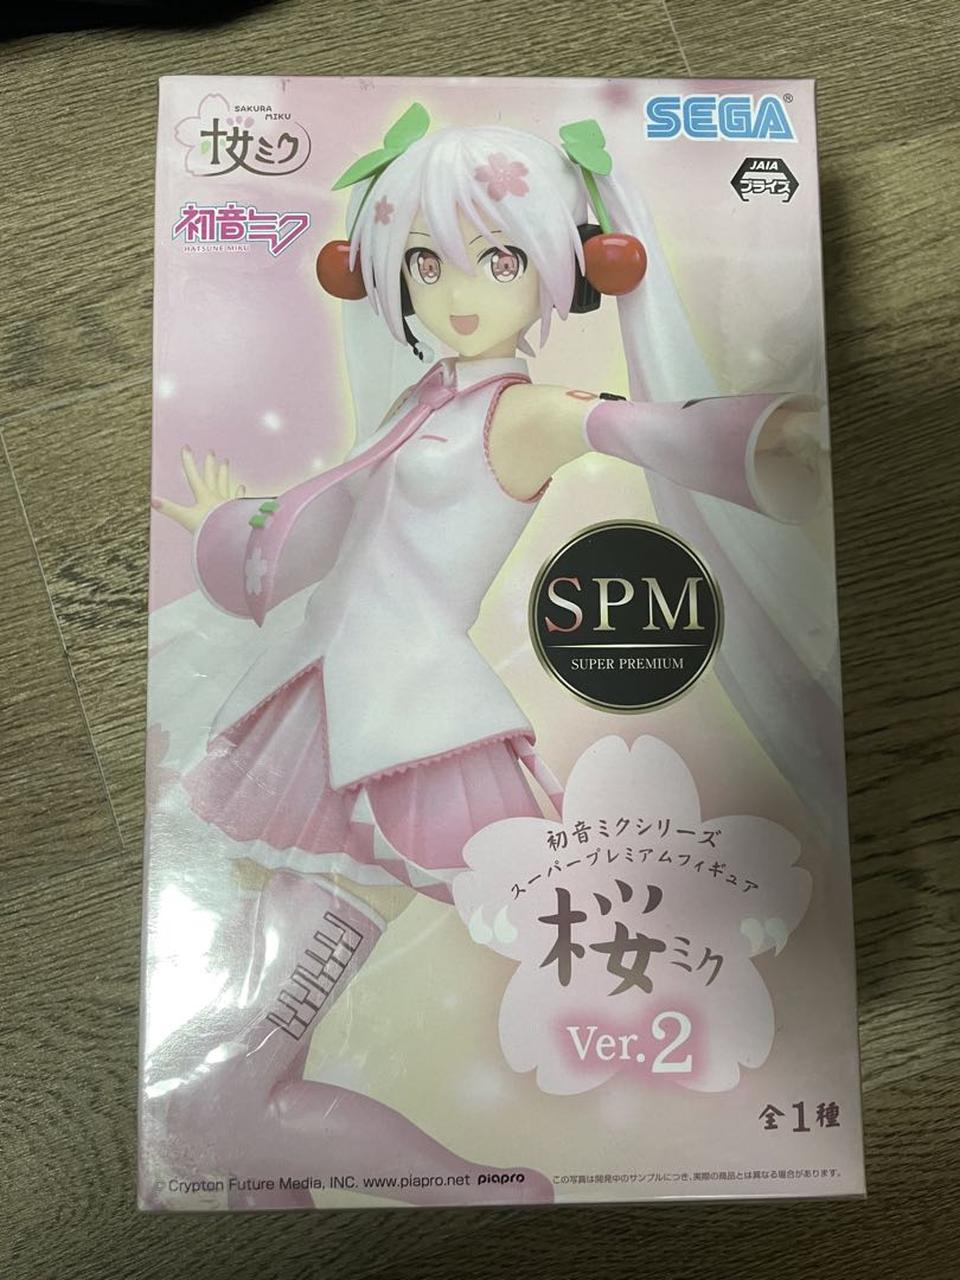 Hatsune Miku SEGA SPM Figure Sakura Miku Ver.2 Buy